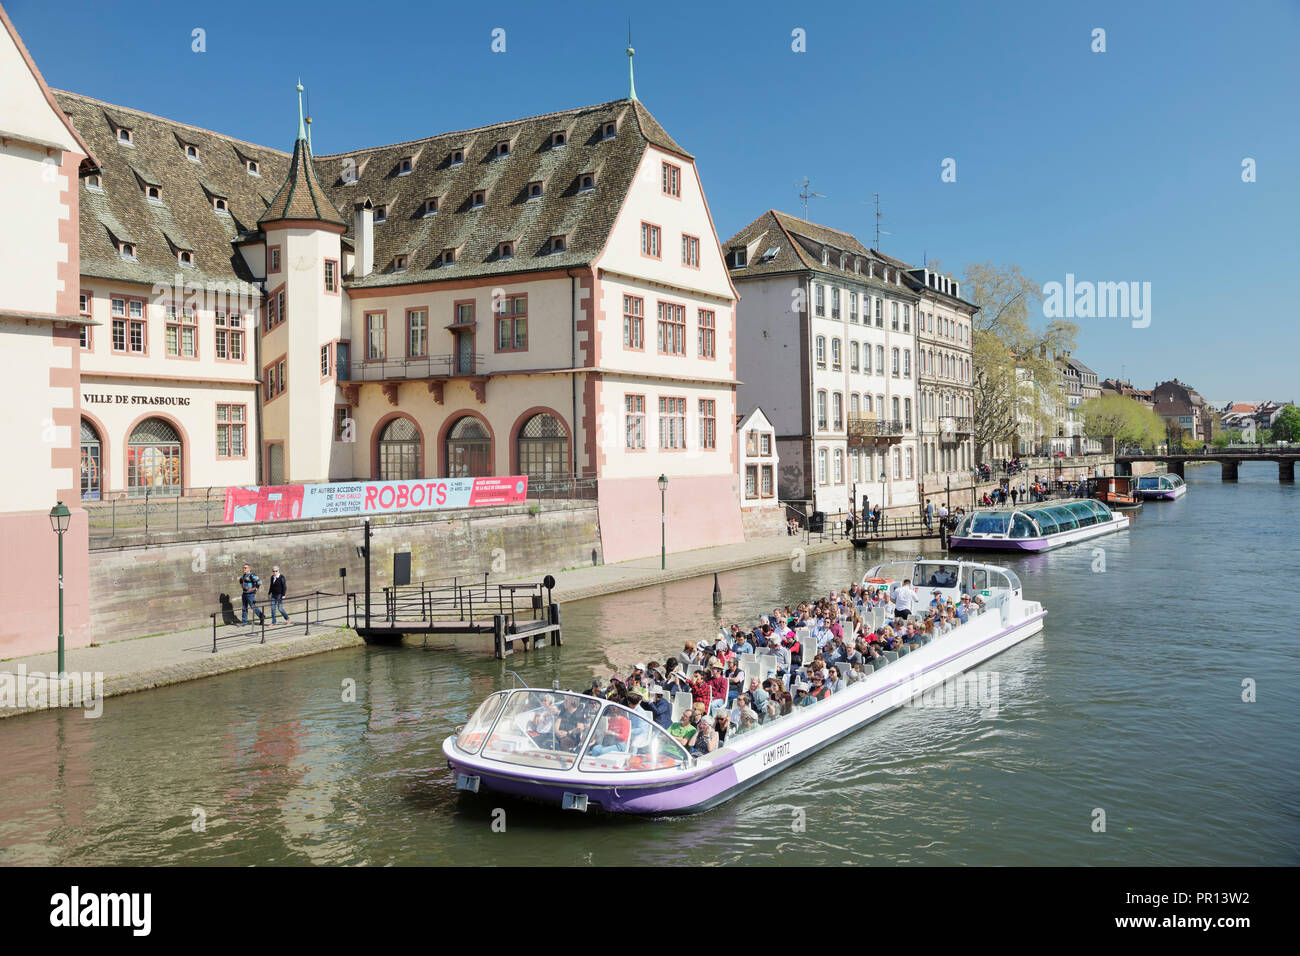 Bateau d'excursion sur la rivière Ill, Musée historique, Strasbourg, Alsace, France, Europe Banque D'Images